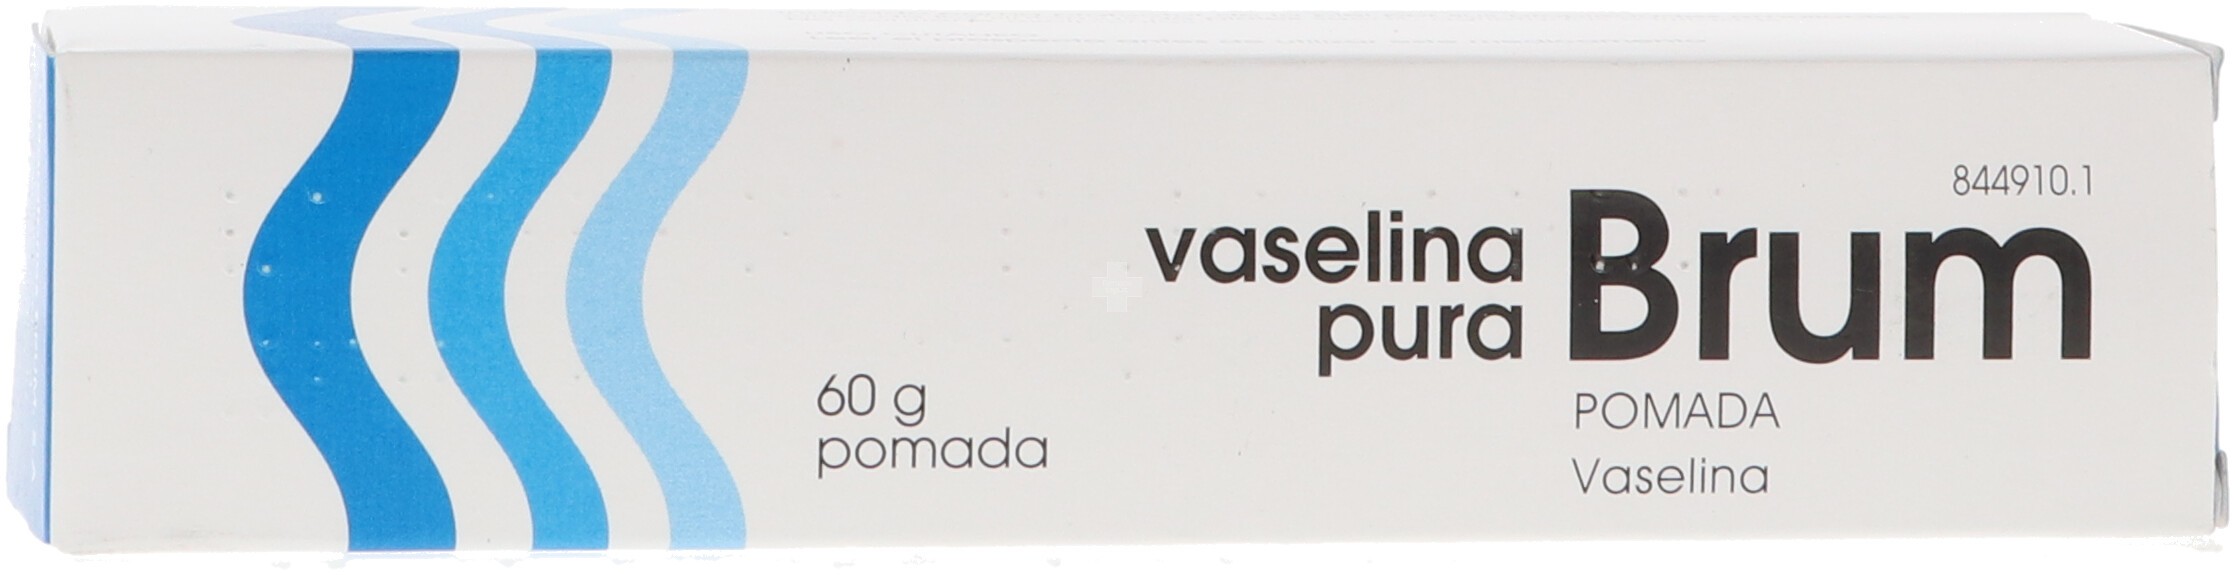 Vaselina Pura Brum Pomada 1 Tubo De 60 g